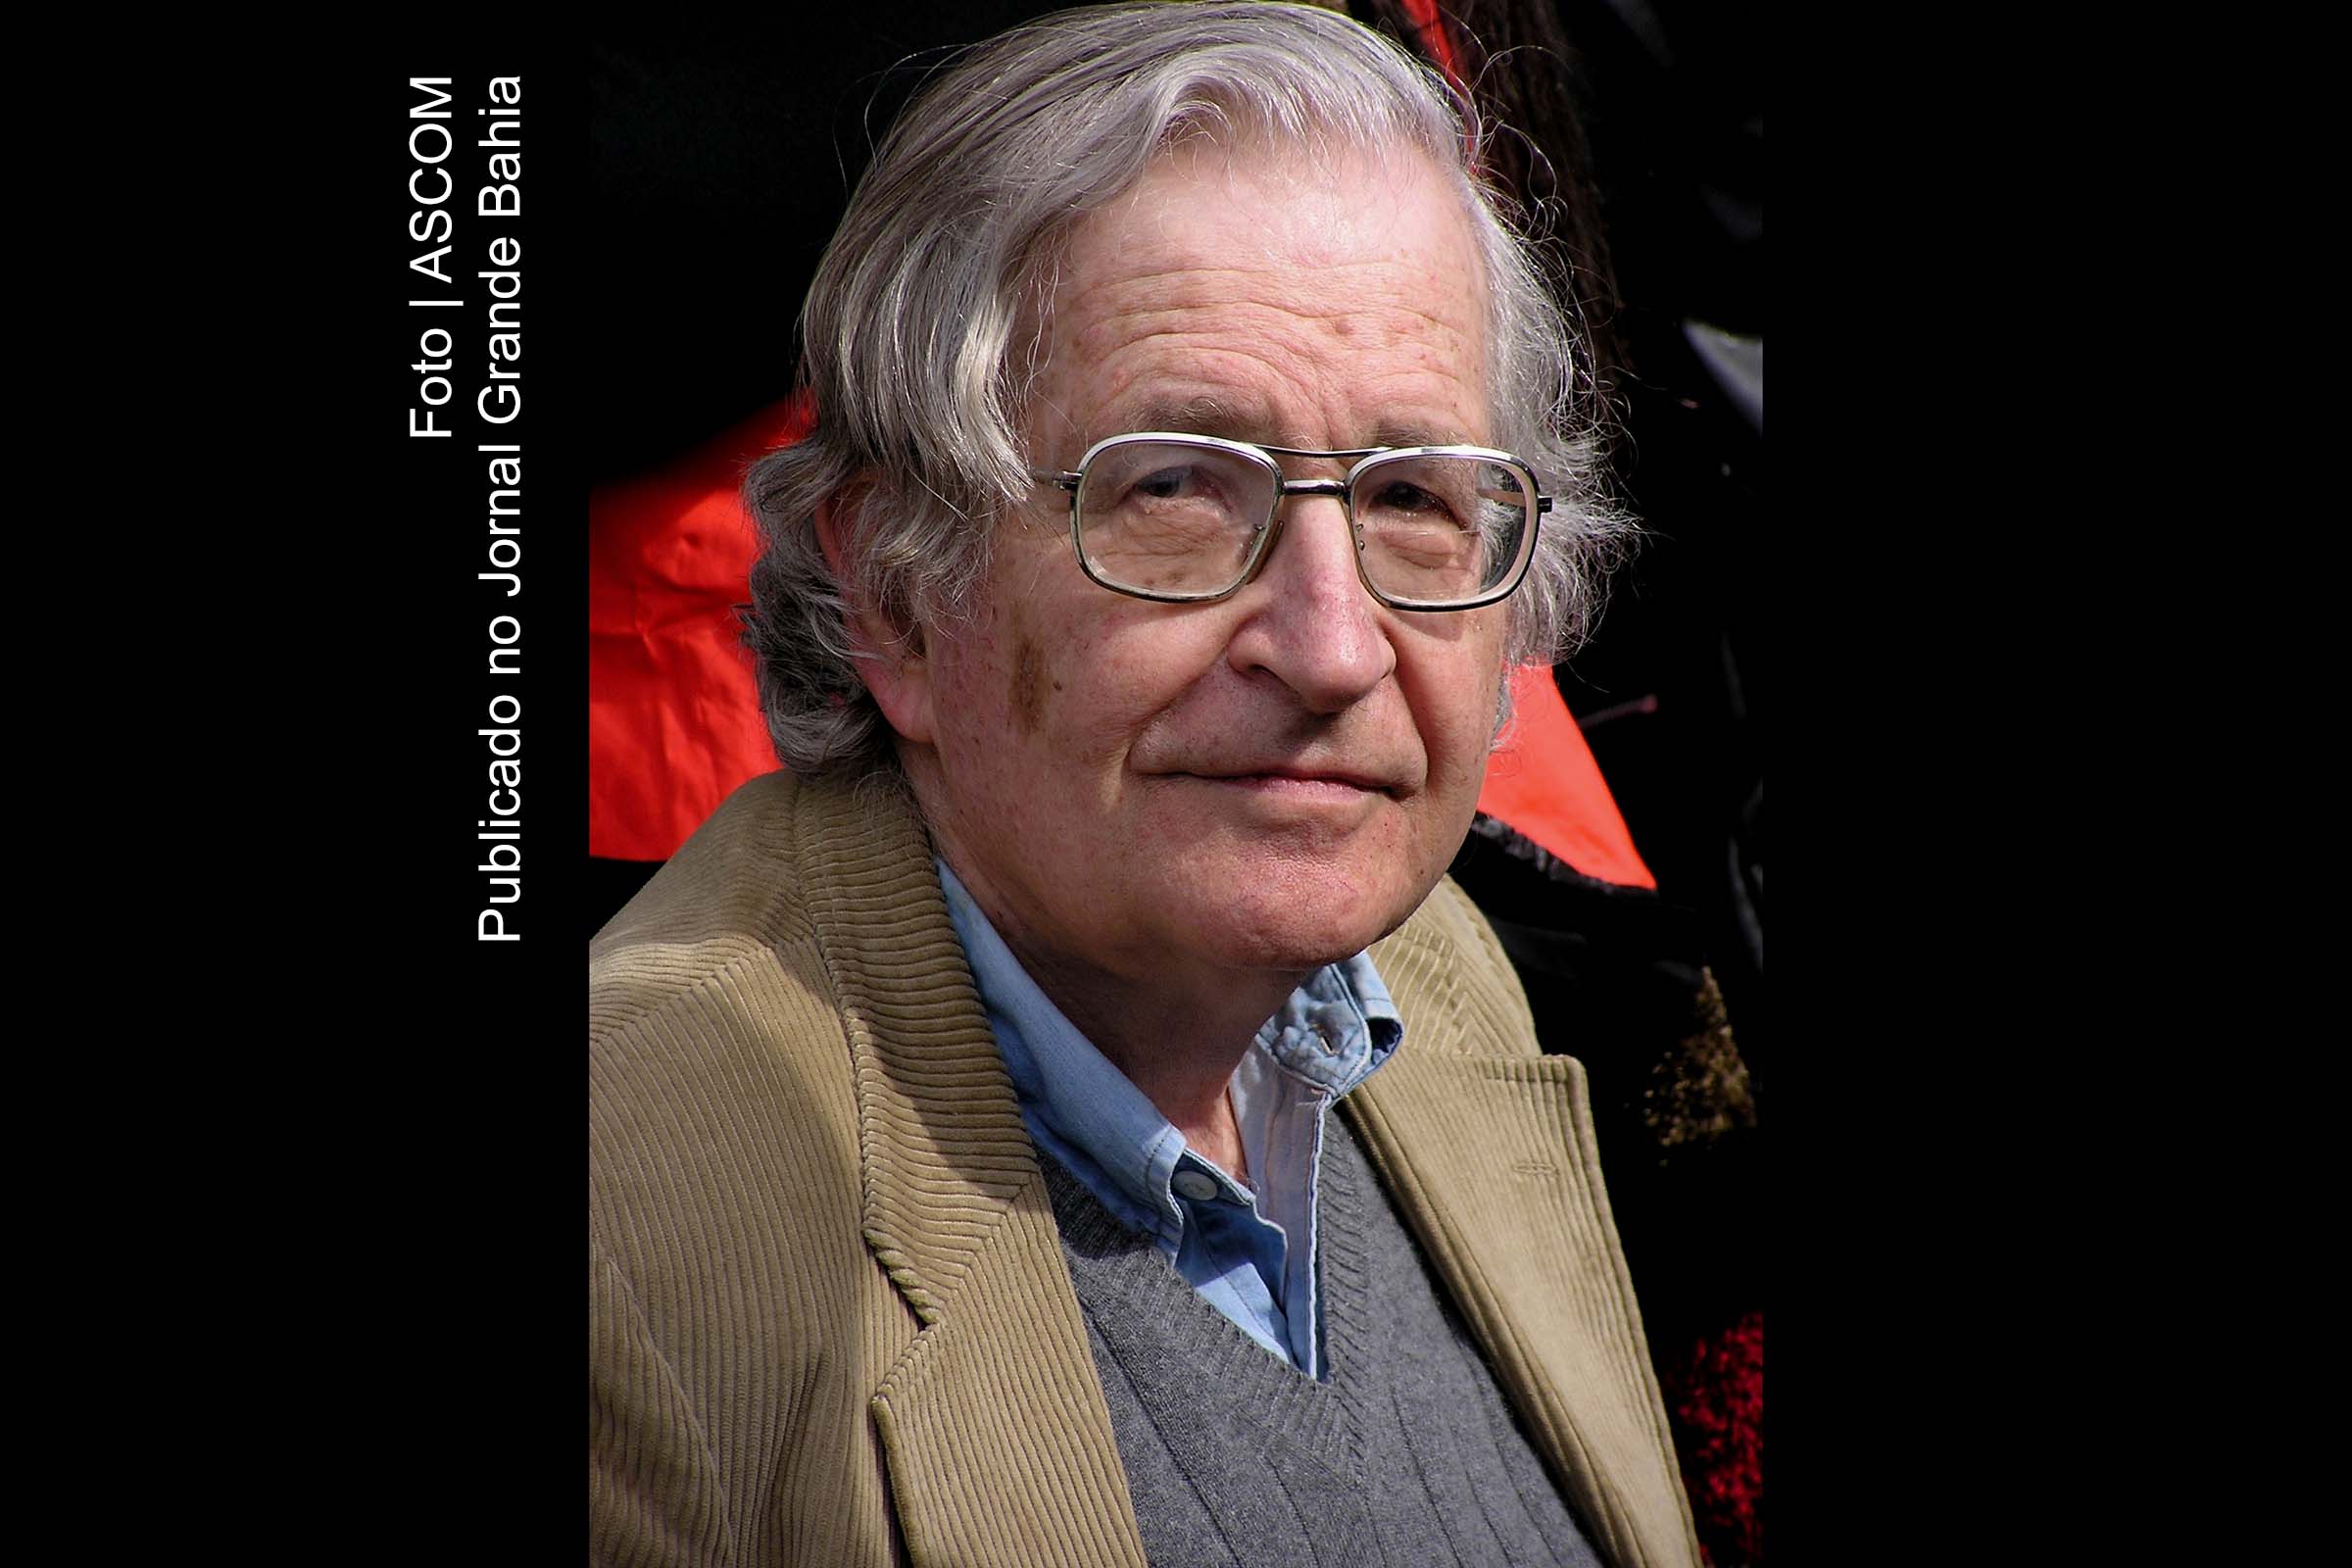 Avram Noam Chomsky (Filadélfia, 7 de dezembro de 1928) é um linguista, filósofo, cientista cognitivo, comentarista e ativista político norte-americano, reverenciado em âmbito acadêmico como "o pai da linguística moderna", também é uma das mais renomadas figuras no campo da filosofia analítica.